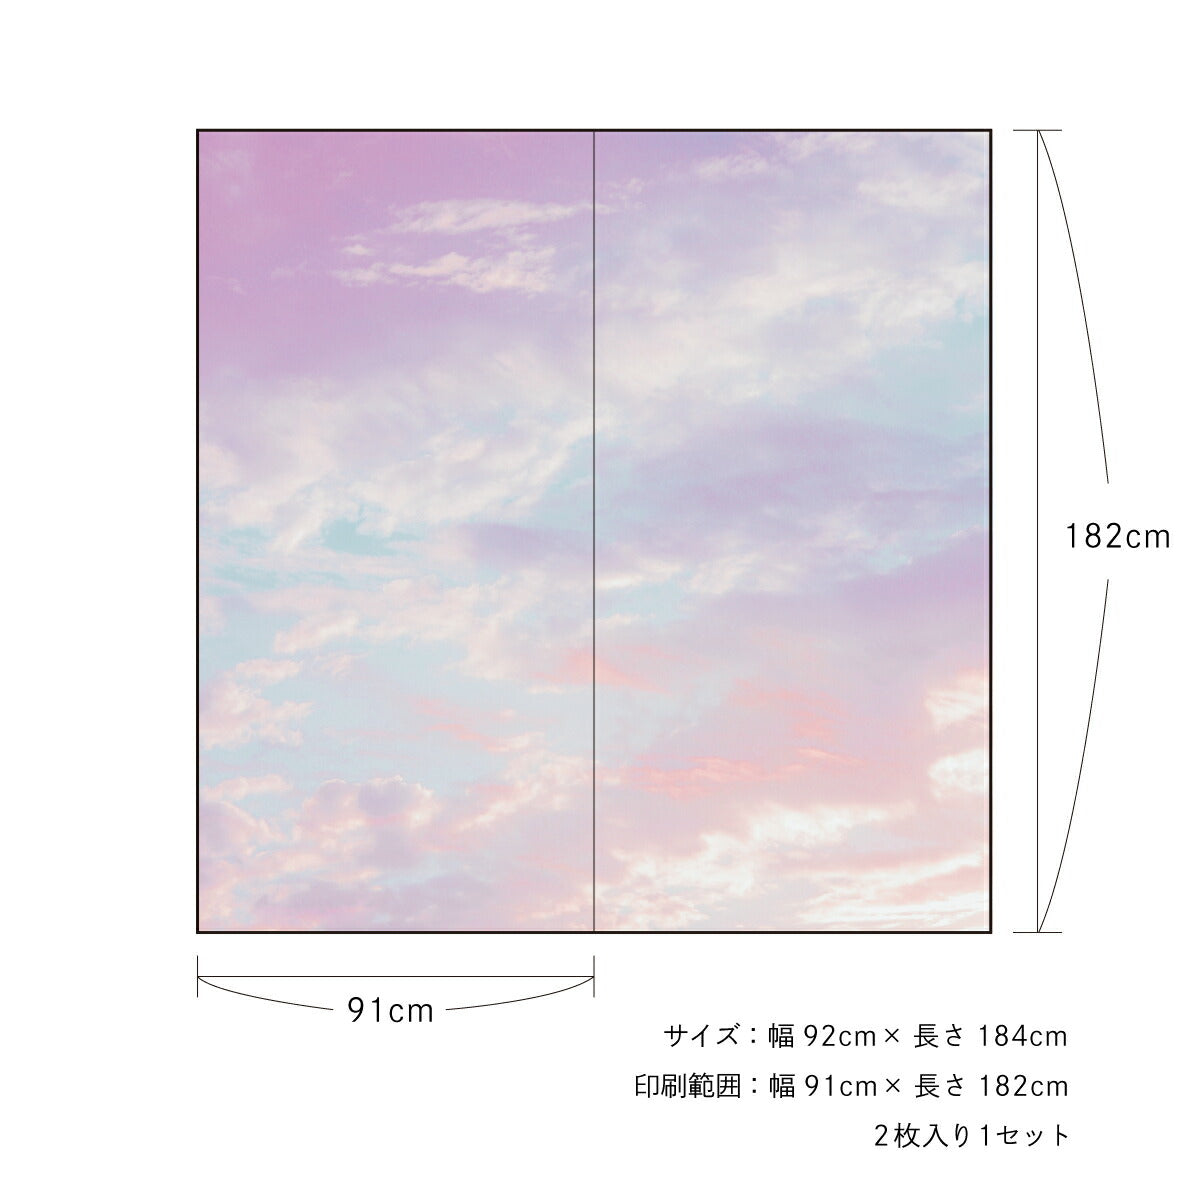 ふすま紙 空もよう襖紙 sky-03F Dawn pink 91cm×182cm 2枚1組 水で貼るタイプ アサヒペン<br>おしゃれ 洋風 空 青空 柄 アート デザイン ピンク 水色 淡色 再湿 ふすま<br>